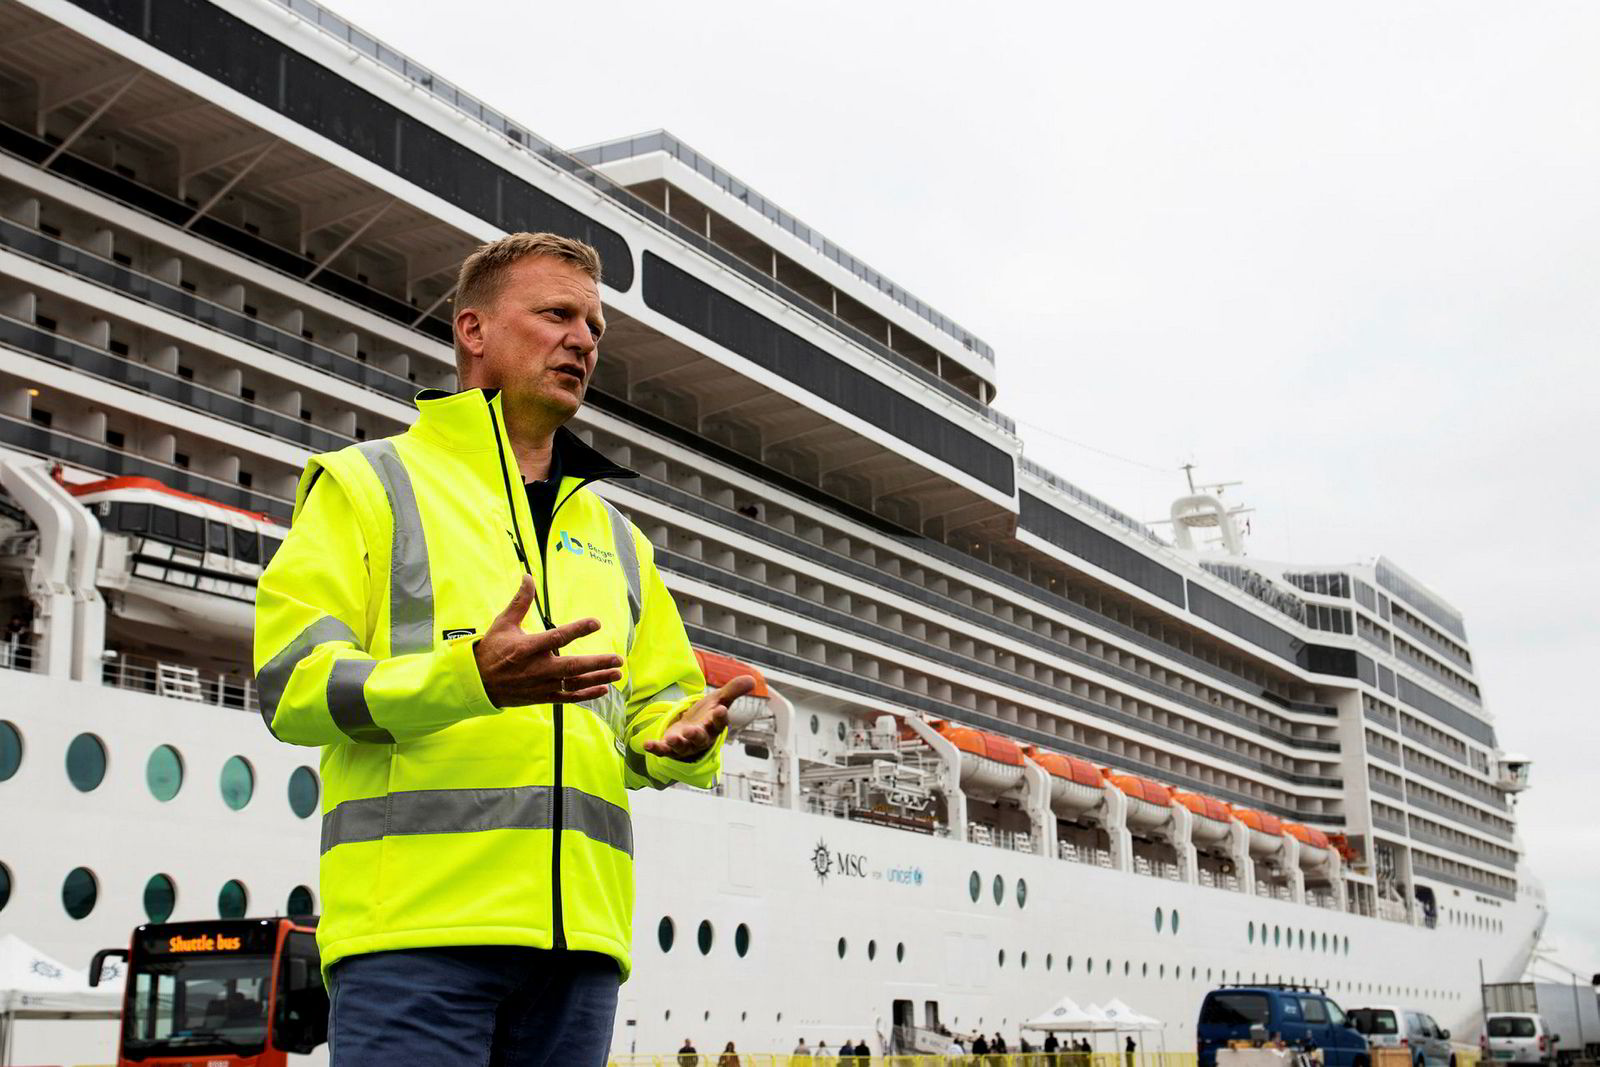 Havnedirektør Johnny Breivik er skuffet over å få avslag på søknad om støtte til å investere i landstrømanlegg til cruiseskip. Både utslipp og støy fra cruisetrafikken er et stort problem i turistsesongen.